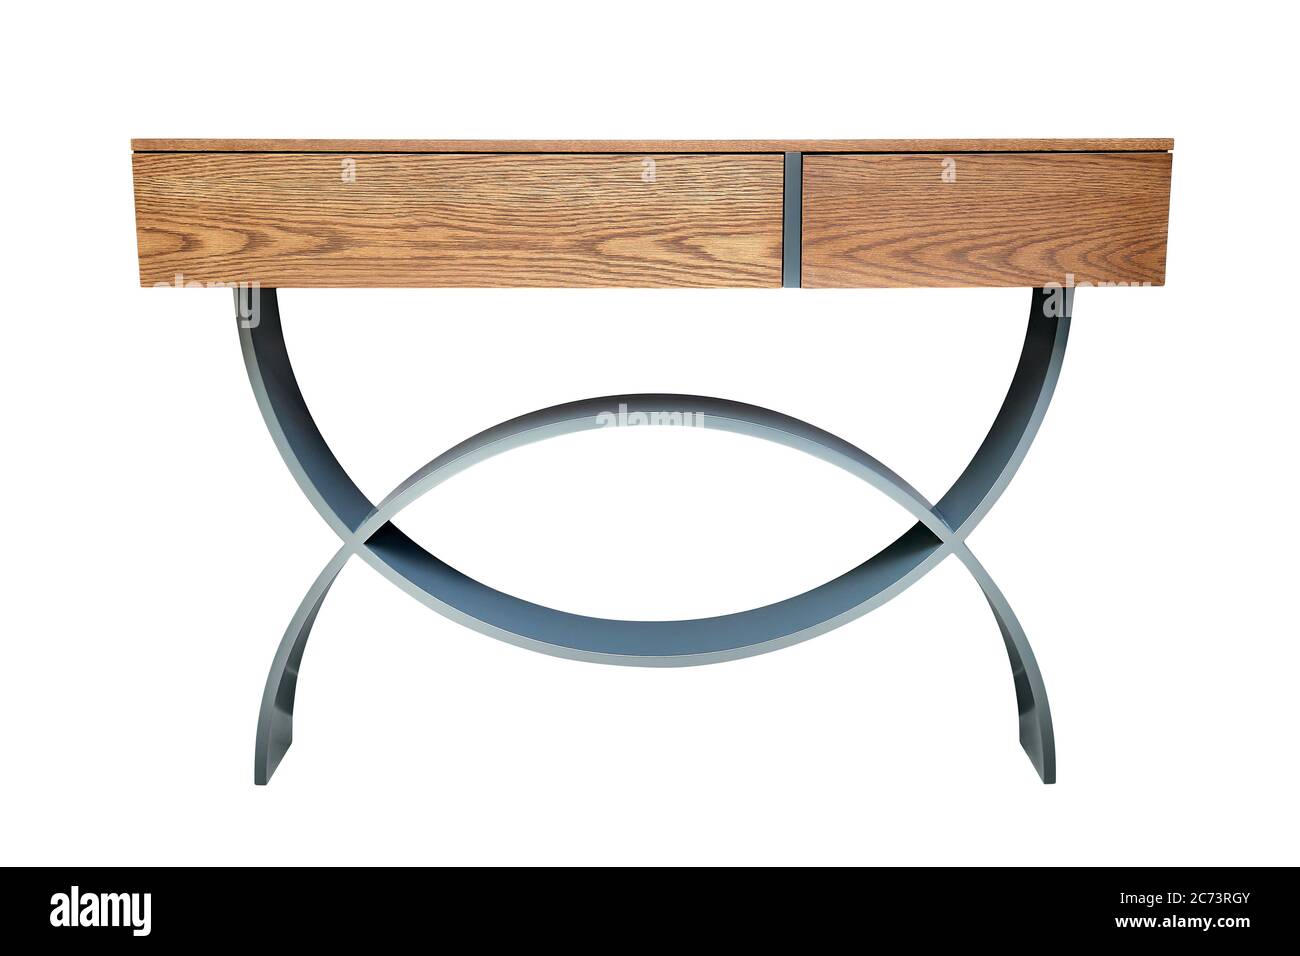 Table de console en bois avec pieds courbés laqués gris isolés sur du blanc Banque D'Images